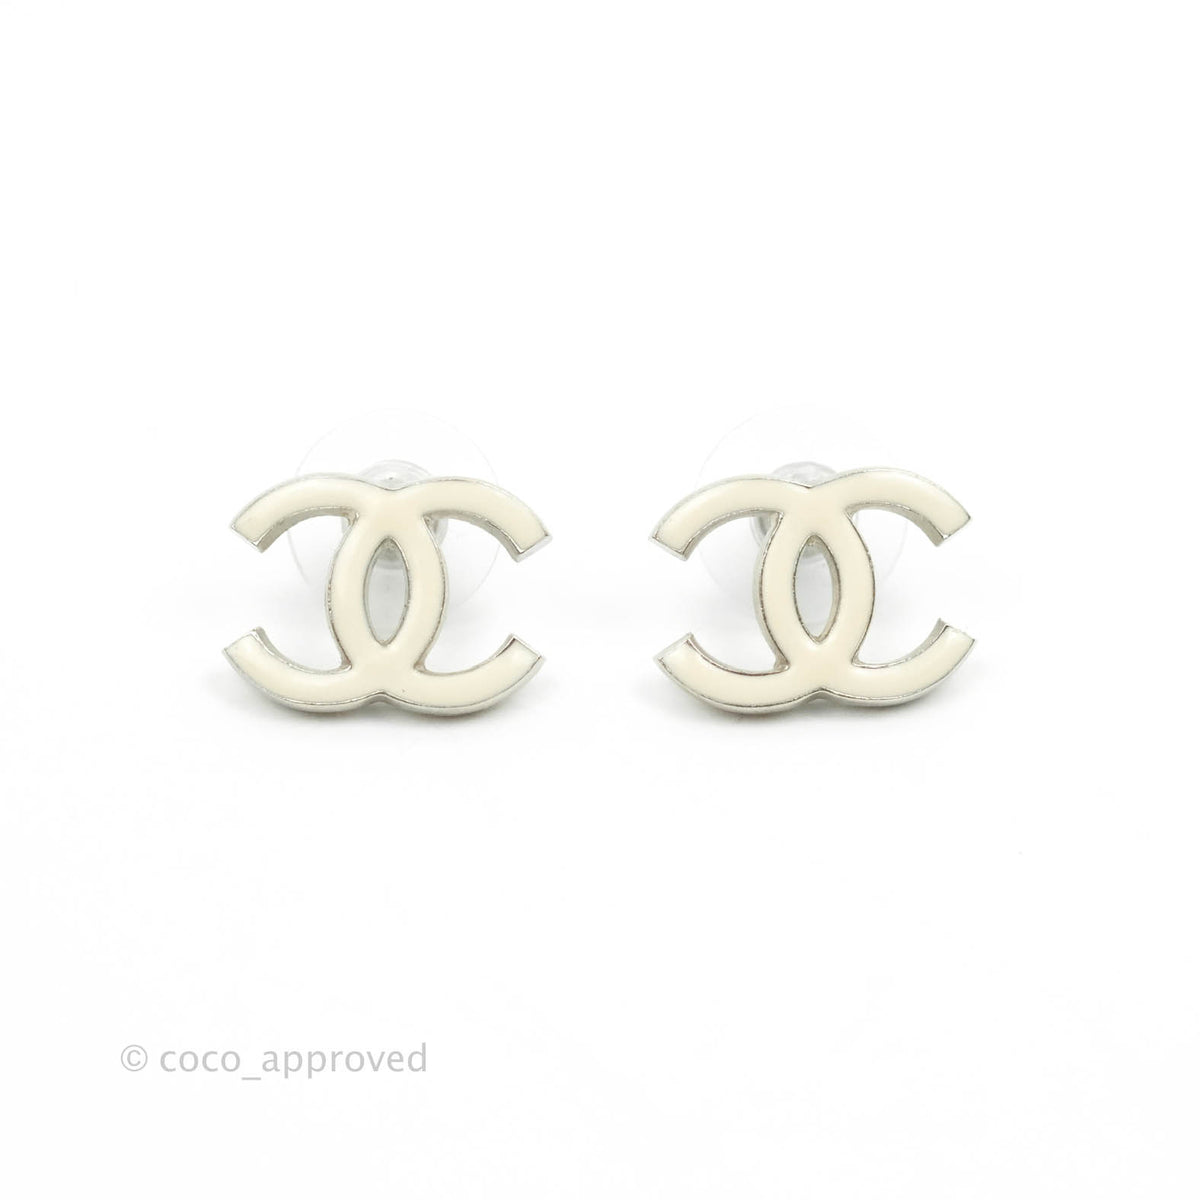 Cc earrings Chanel White in Metal - 21669788